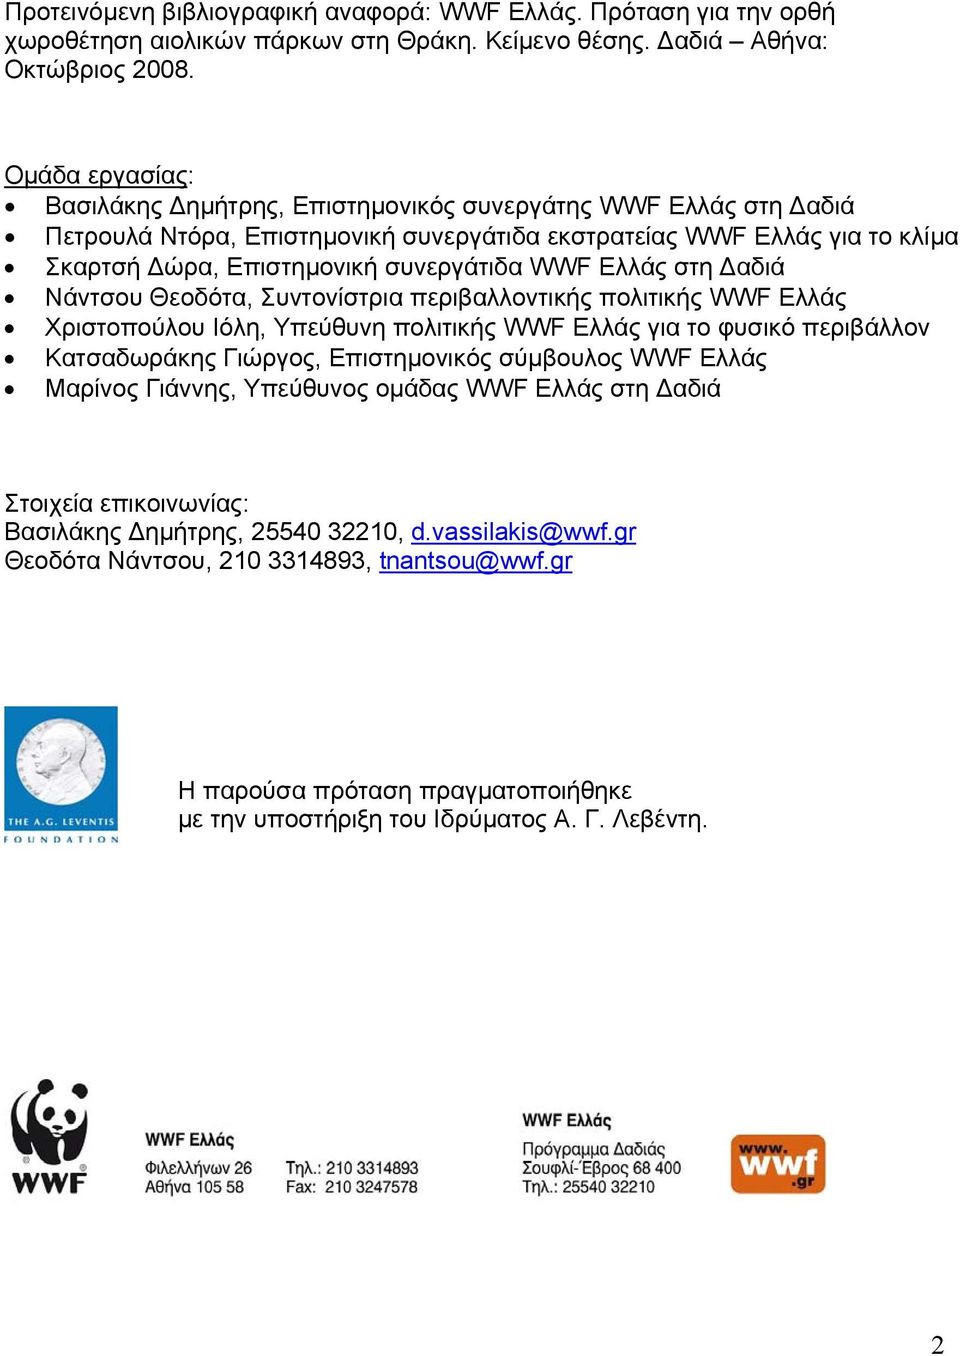 Ελλάς στη Δαδιά Νάντσου Θεοδότα, Συντονίστρια περιβαλλοντικής πολιτικής WWF Ελλάς Χριστοπούλου Ιόλη, Υπεύθυνη πολιτικής WWF Ελλάς για το φυσικό περιβάλλον Κατσαδωράκης Γιώργος, Επιστημονικός